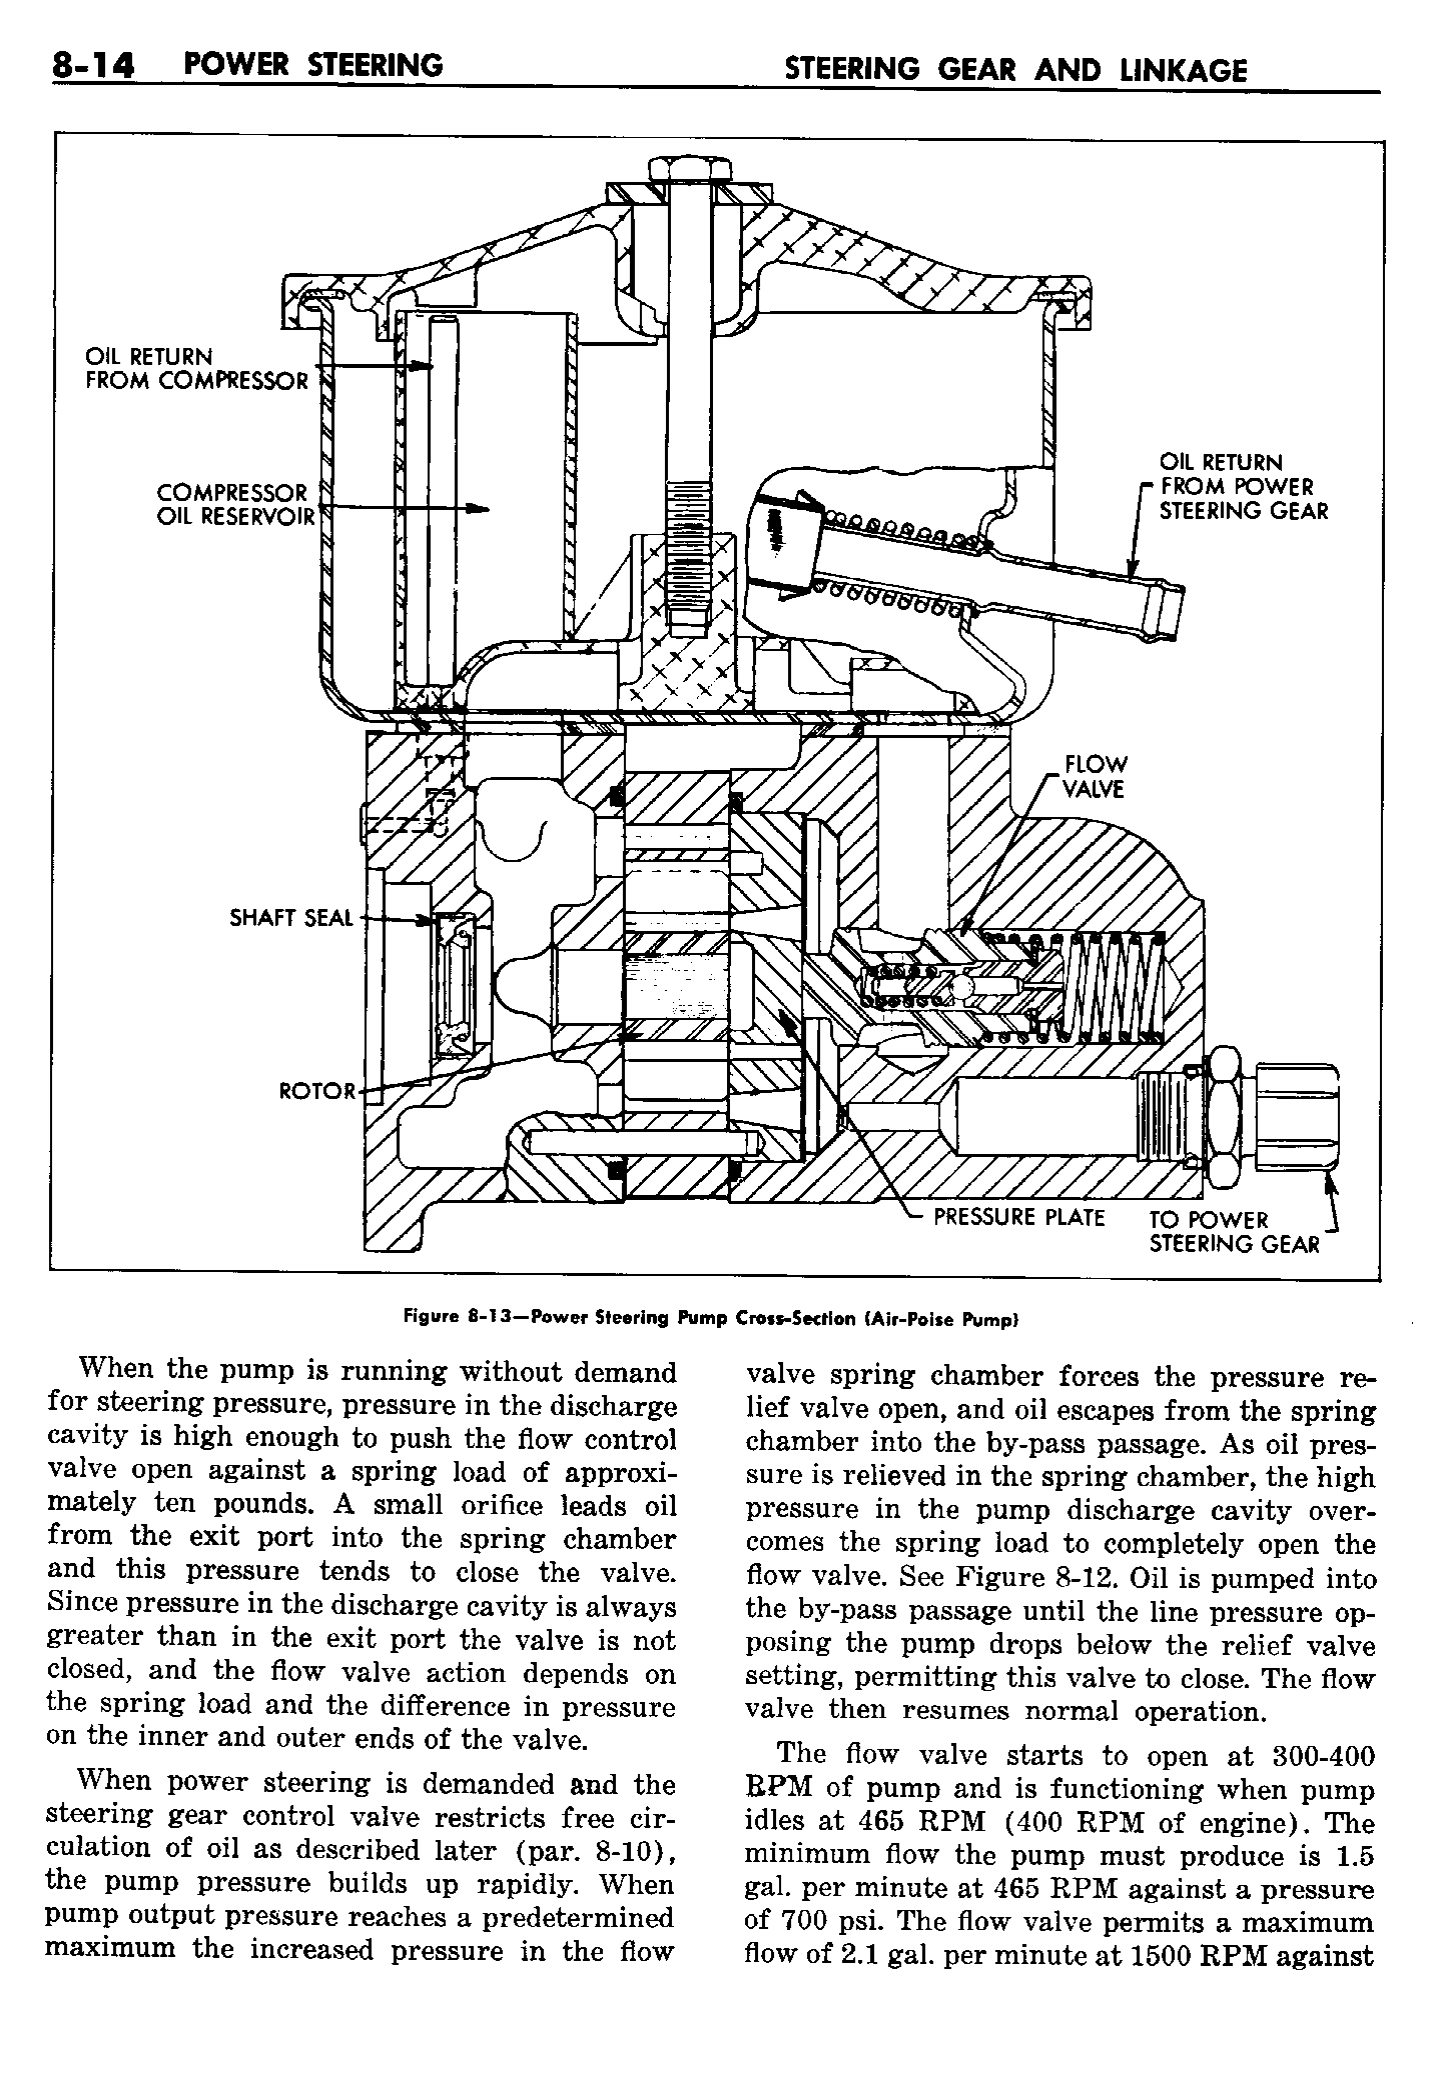 n_09 1958 Buick Shop Manual - Steering_14.jpg